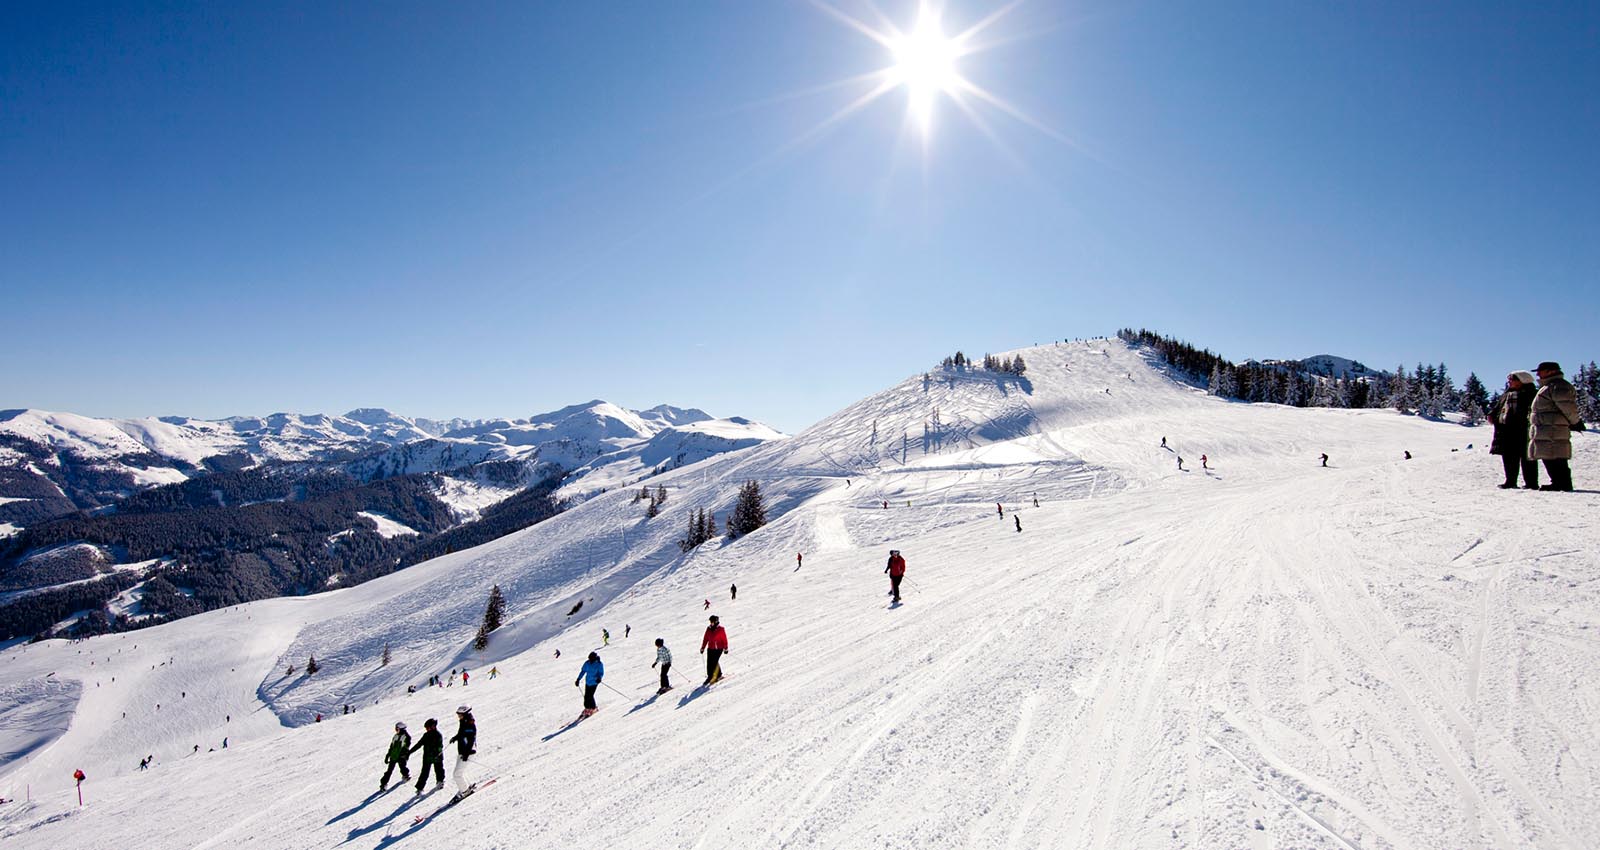 Take your school or group on ski trip to Austria